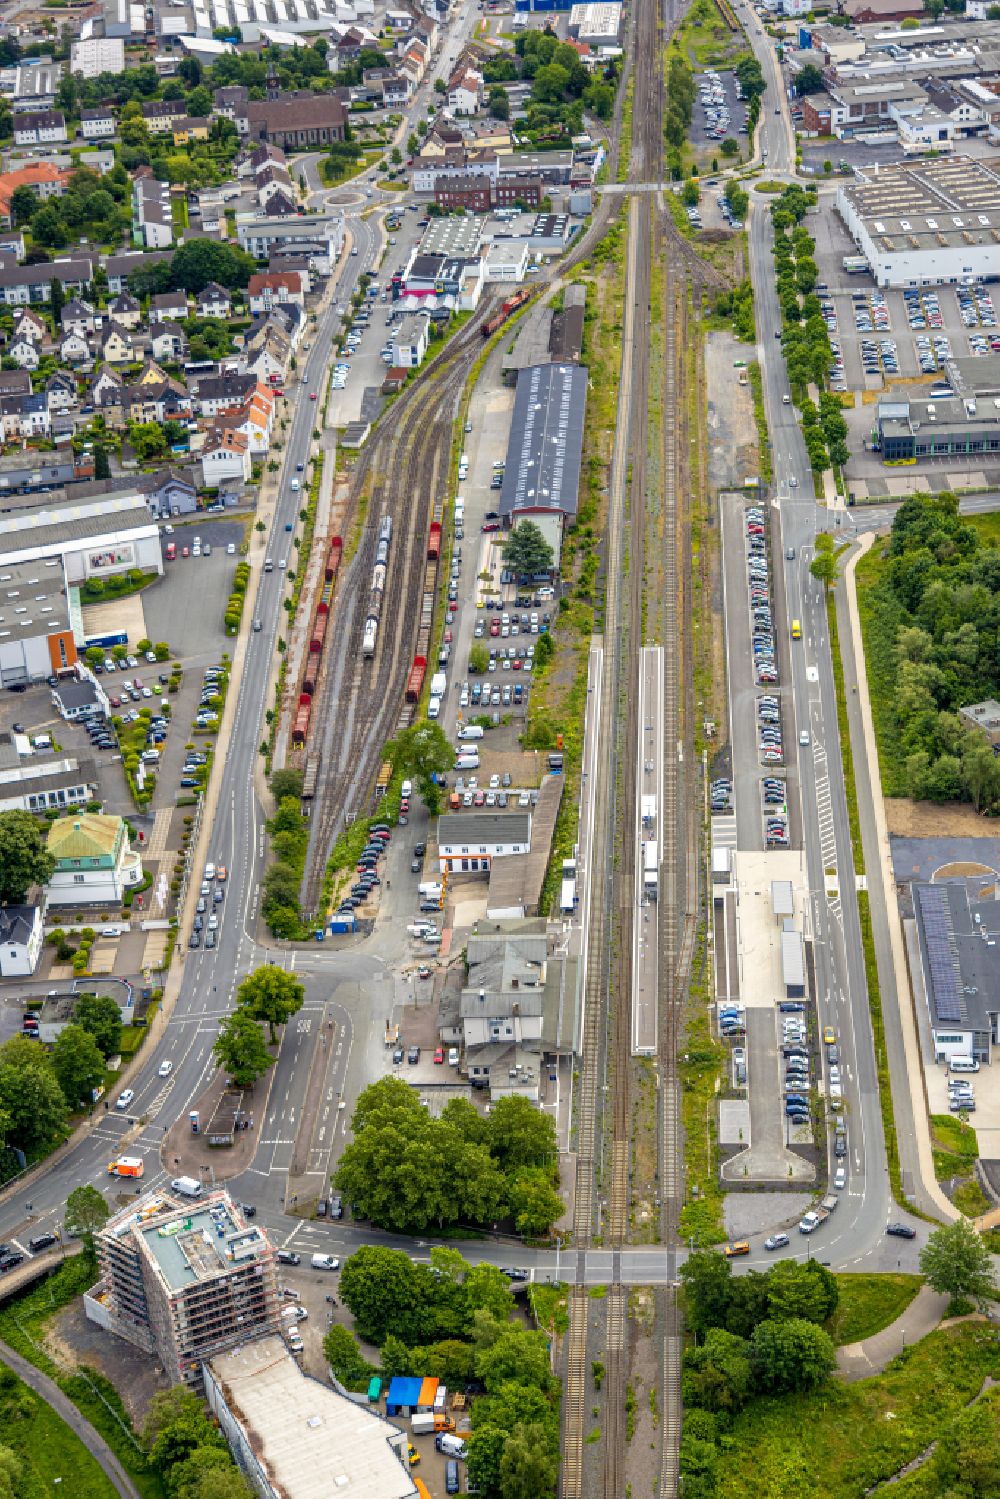 Luftbild Arnsberg - Gleisverlauf am Bahnhof der Deutschen Bahn Neheim-Hüsten in Arnsberg im Bundesland Nordrhein-Westfalen, Deutschland